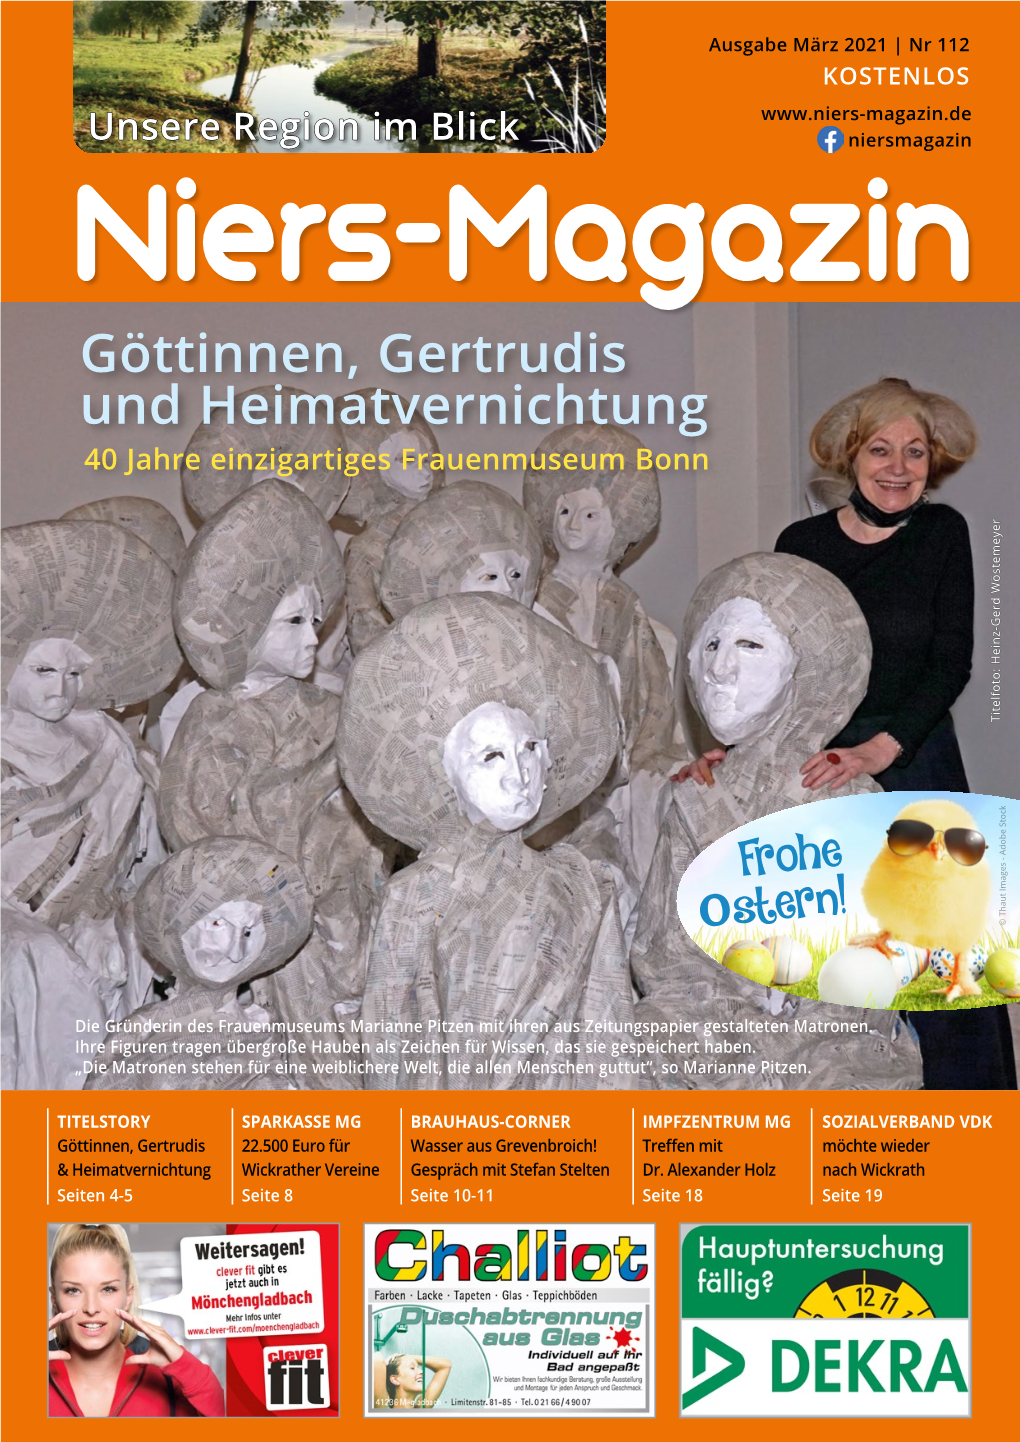 Göttinnen, Gertrudis Und Heimatvernichtung 40 Jahre Einzigartiges Frauenmuseum Bonn Titelfoto: Heinz-Gerd Wöstemeyer Titelfoto: Heinz-Gerd Wöstemeyer